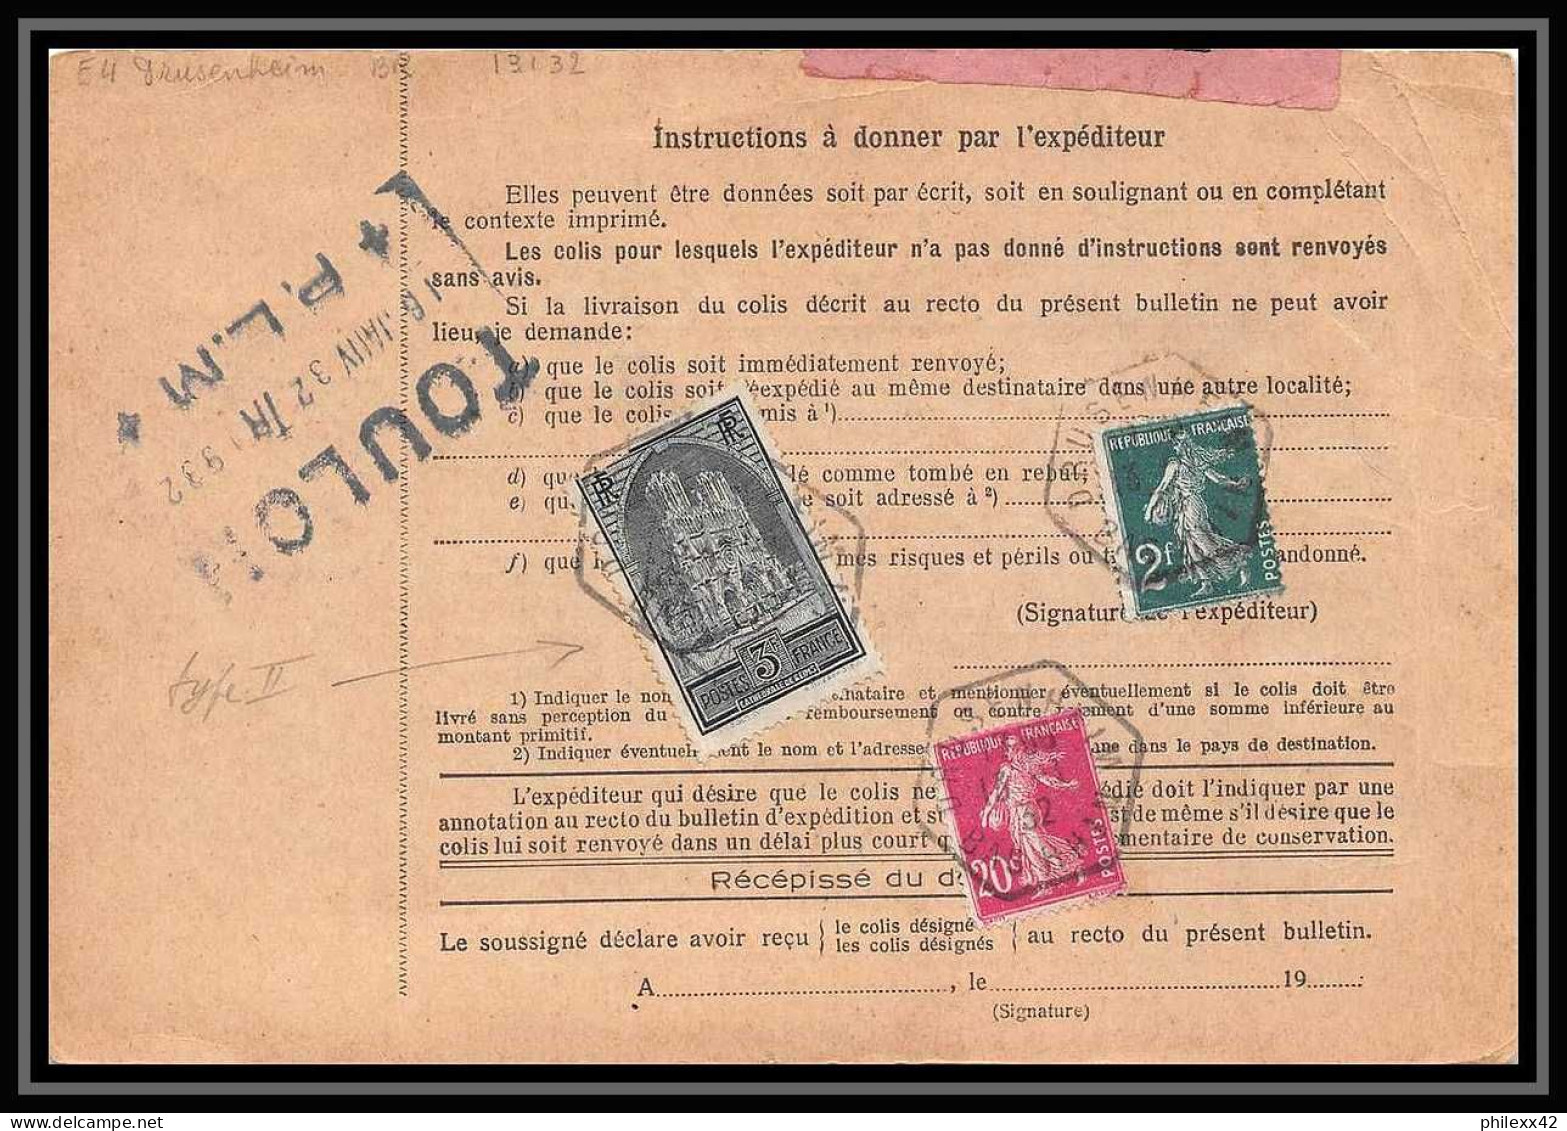 25290/ Bulletin D'expédition France Colis Postaux Fiscal Bas Rhin Drusenheim Gance Frères Toulon 1932 N° 259 REIMS 239 - Brieven & Documenten